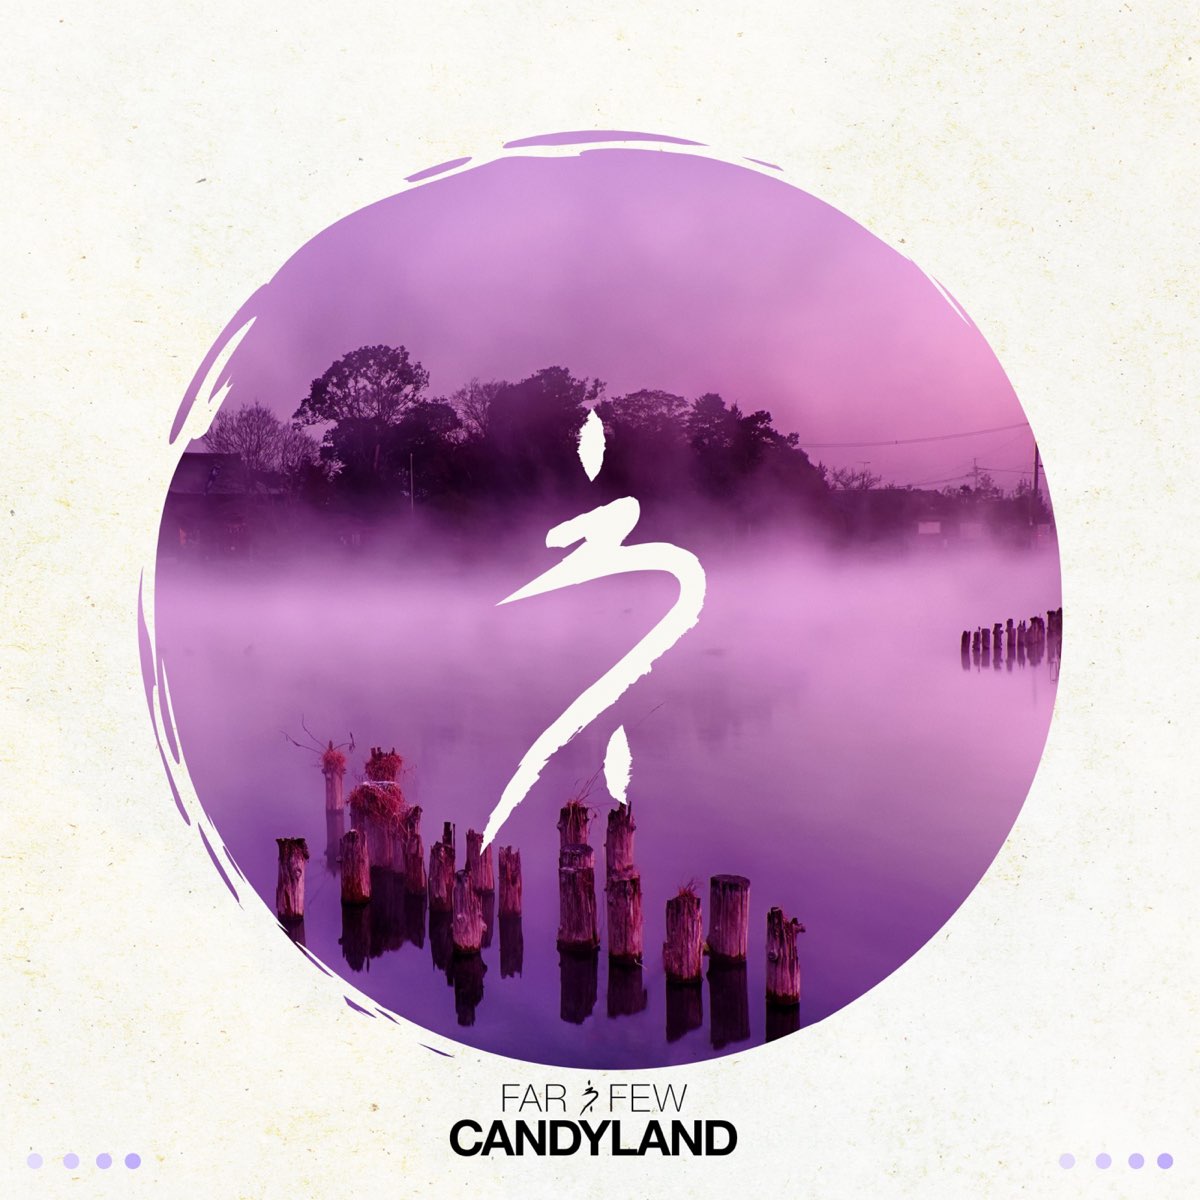 Candyland песня. Candyland Song. Candyland RKCB обложка альбома. Few further